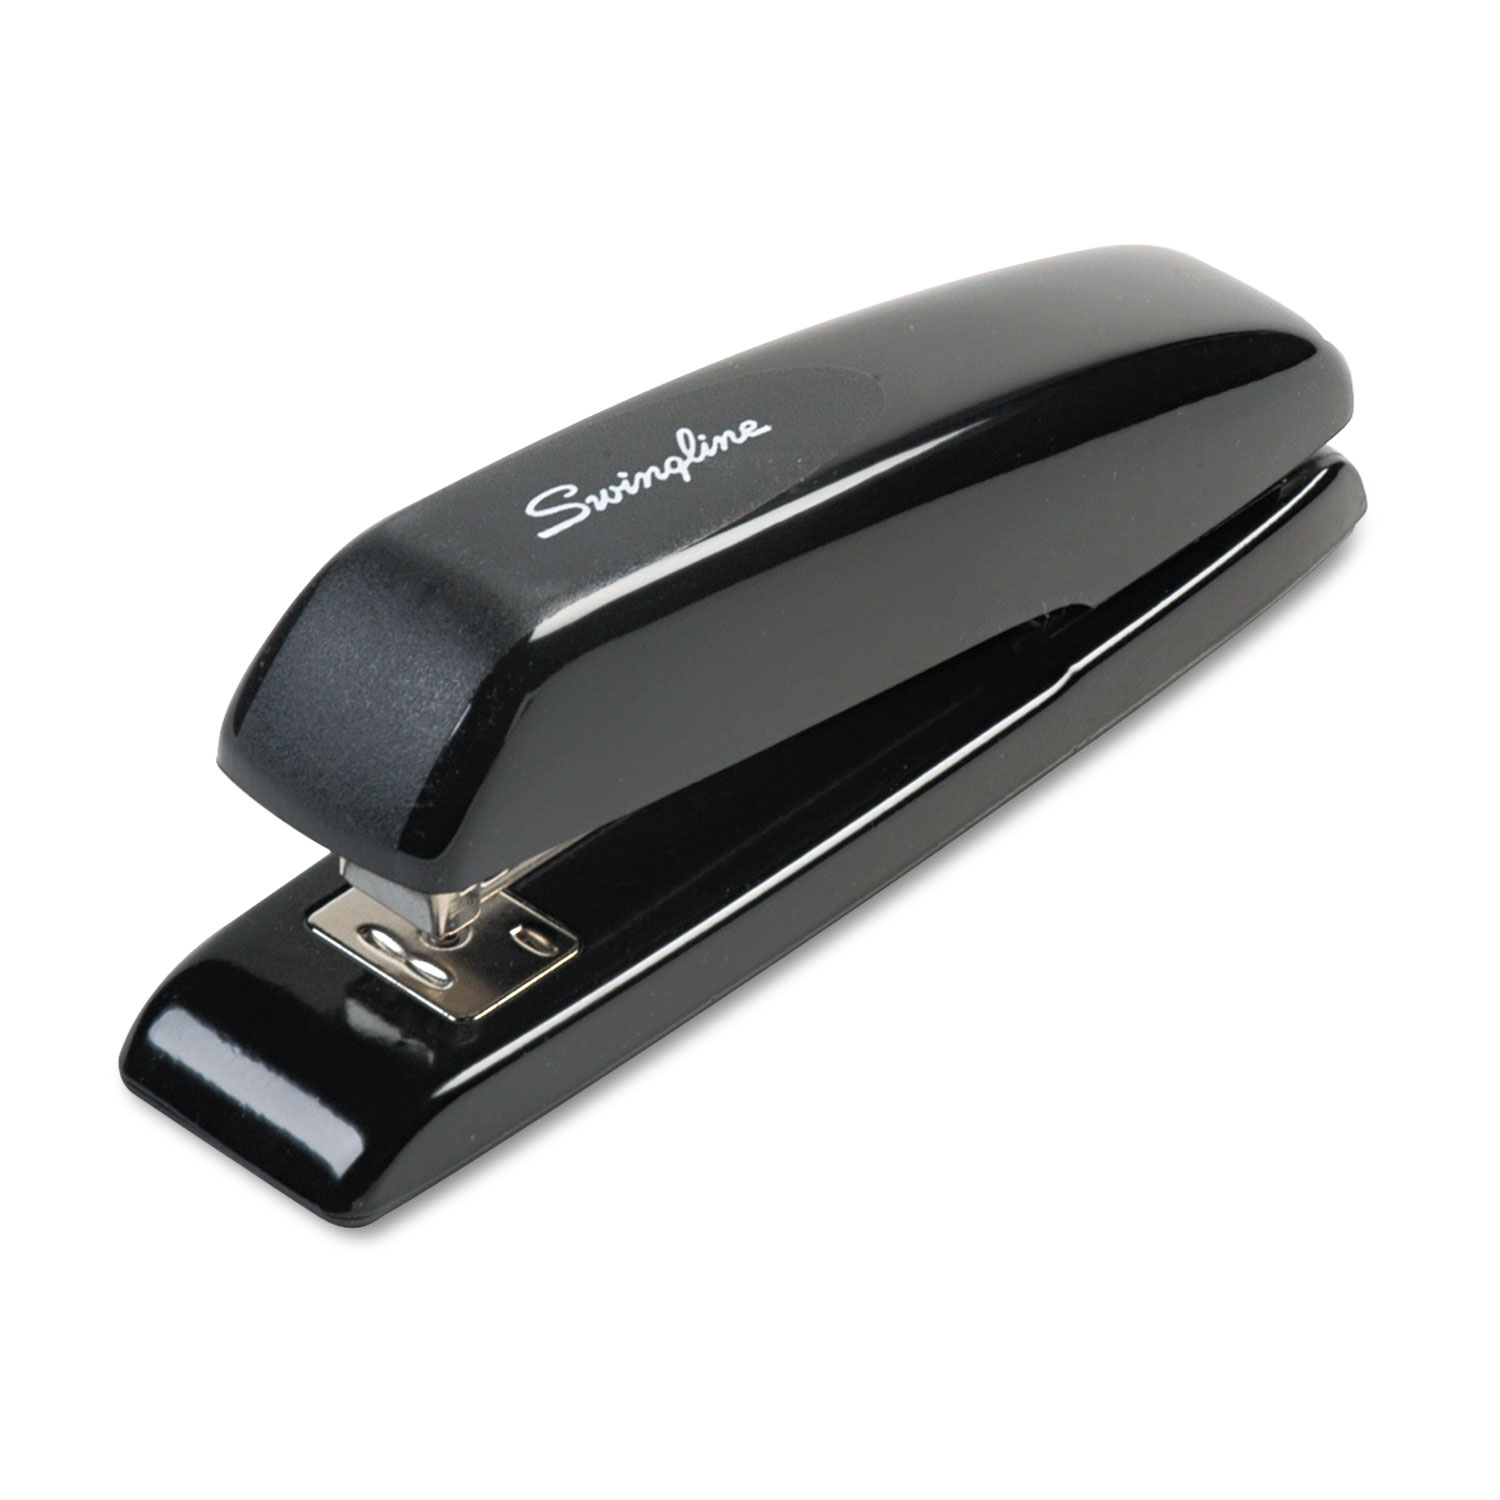  Swingline S7064601G Durable Full Strip Desk Stapler, 20-Sheet Capacity, Black (SWI64601) 